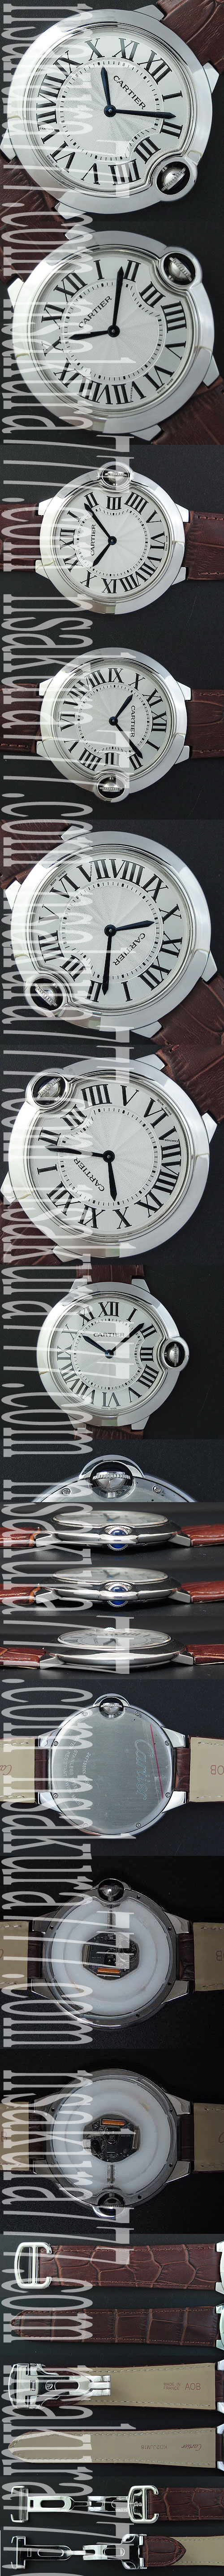 レプリカ時計カルティエ バロンブルー 46ミリ， クォーツムーブメント搭載 ! - ウインドウを閉じる